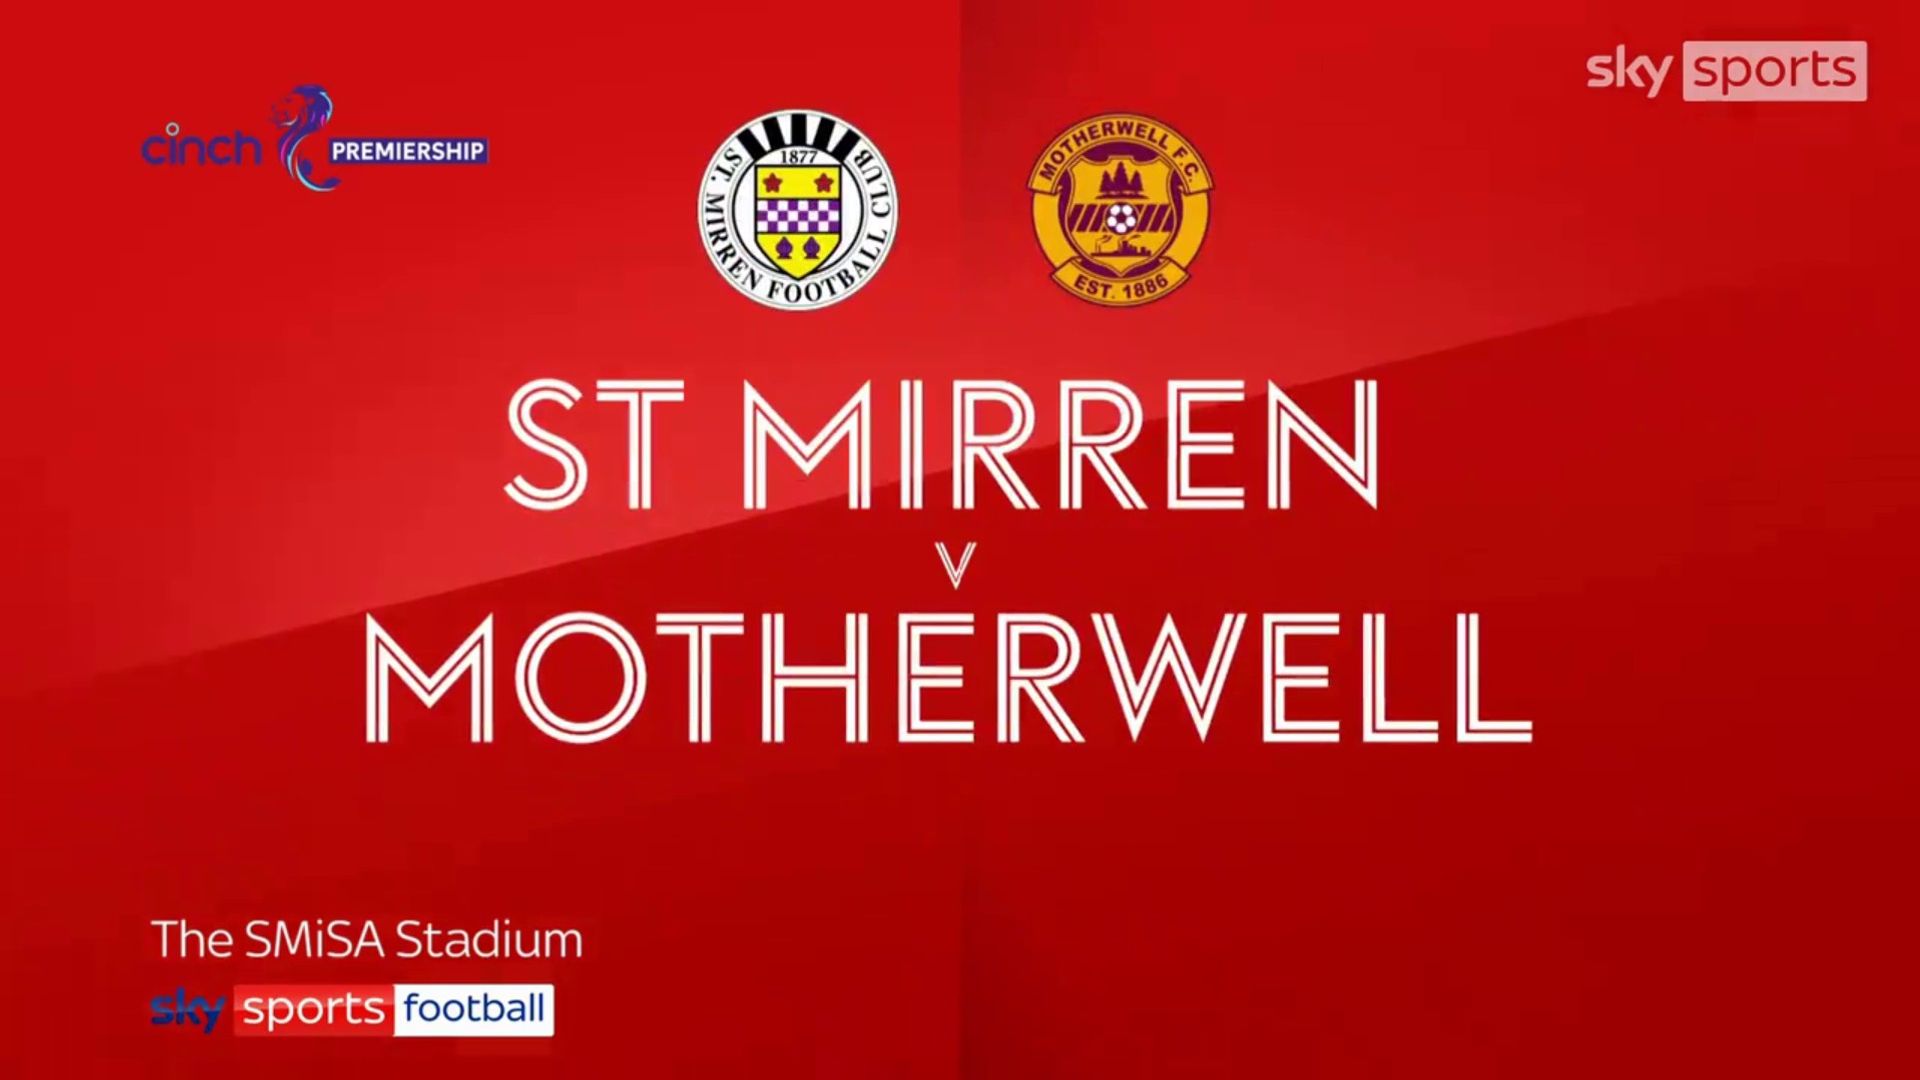 St Mirren 1-0 Motherwell